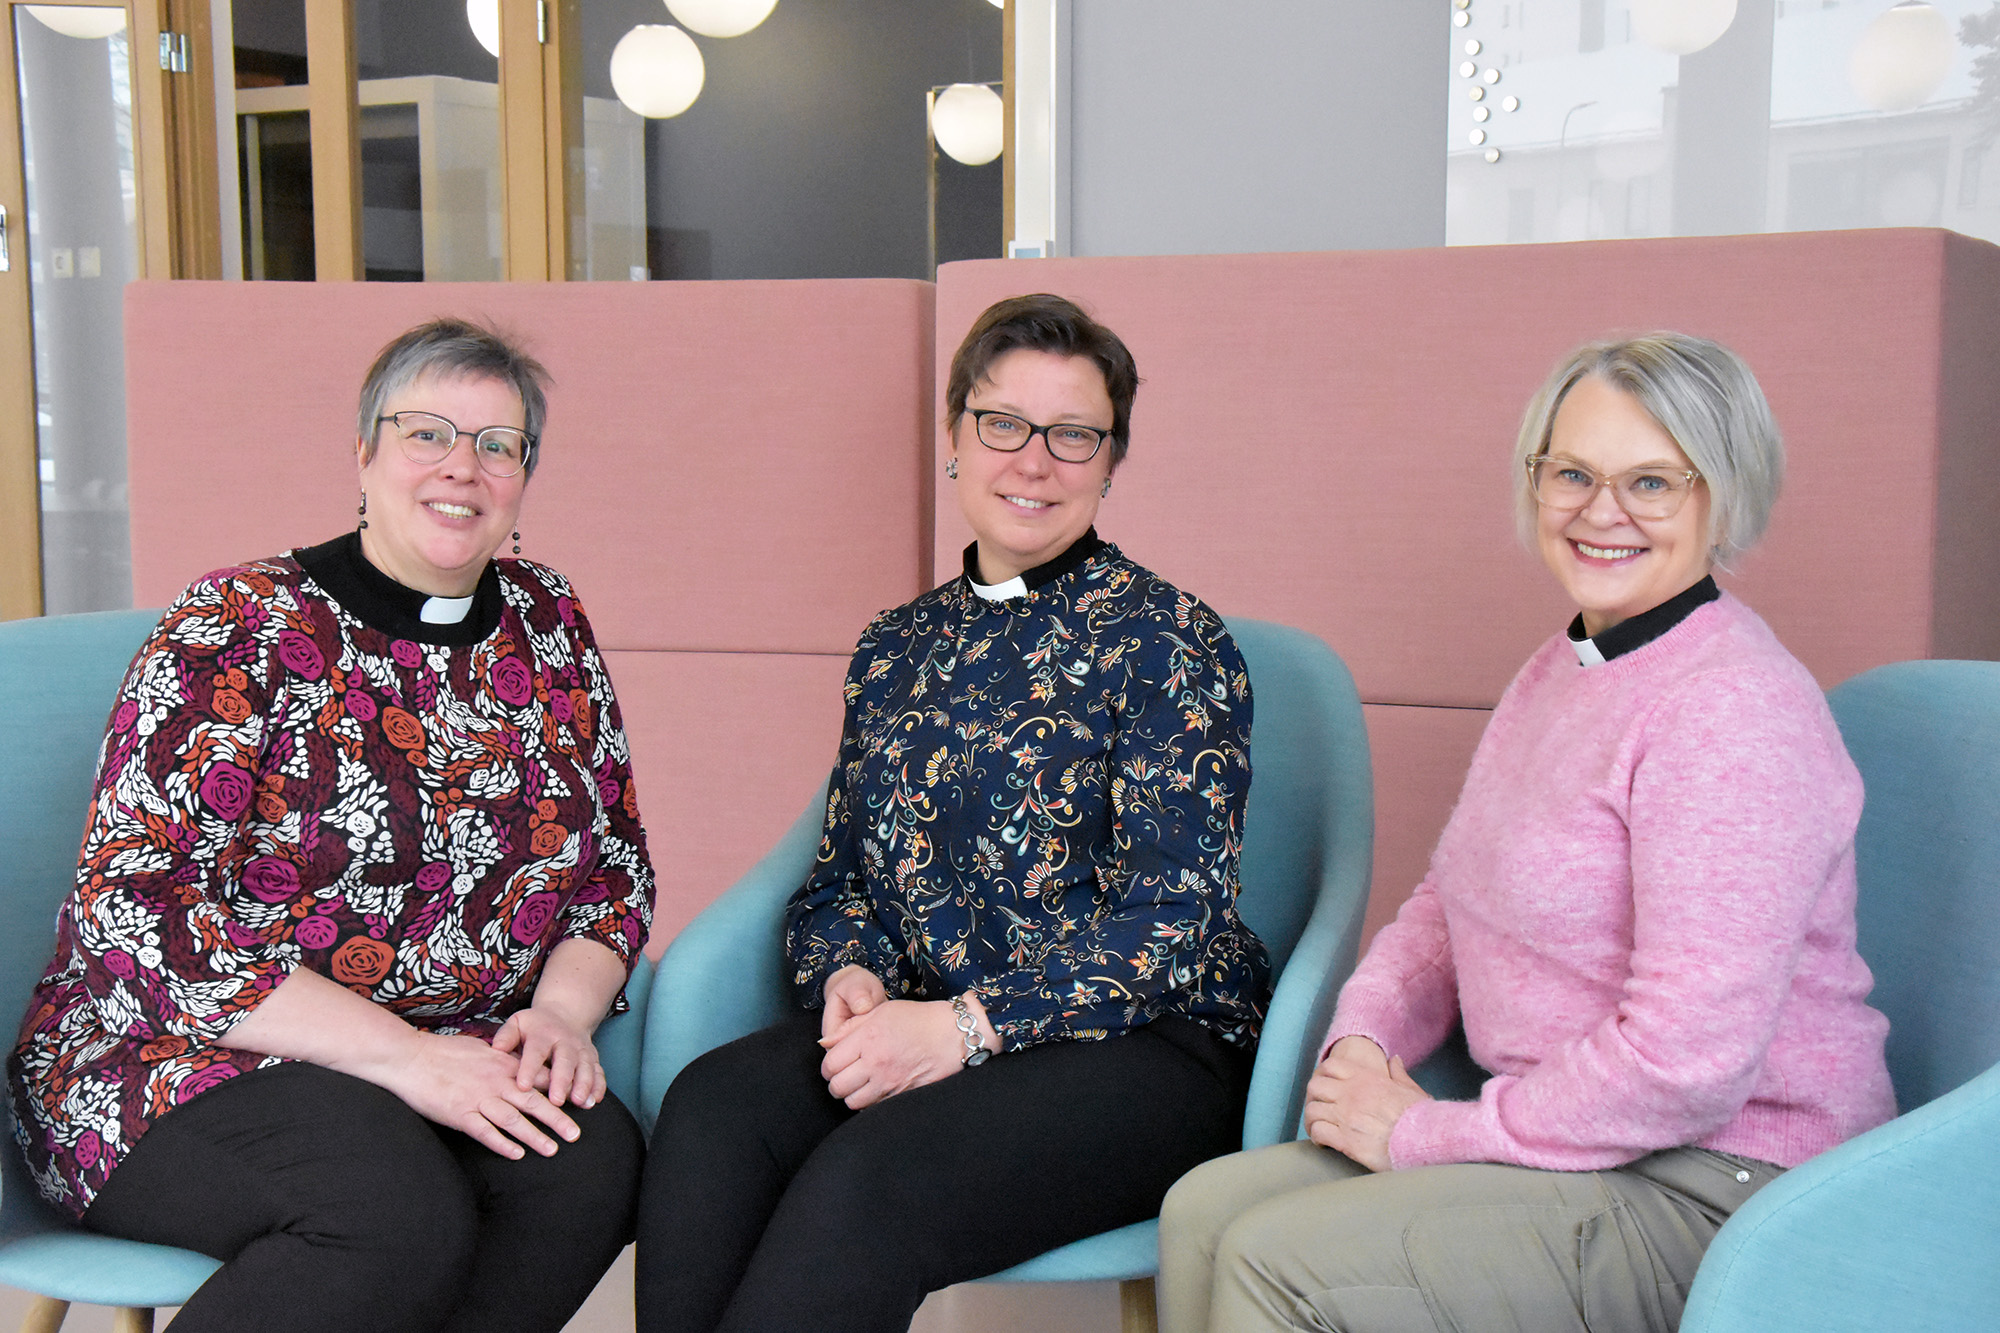 Kolme naista joilla on pappiskaulus, istuvat nojatuoleissa.